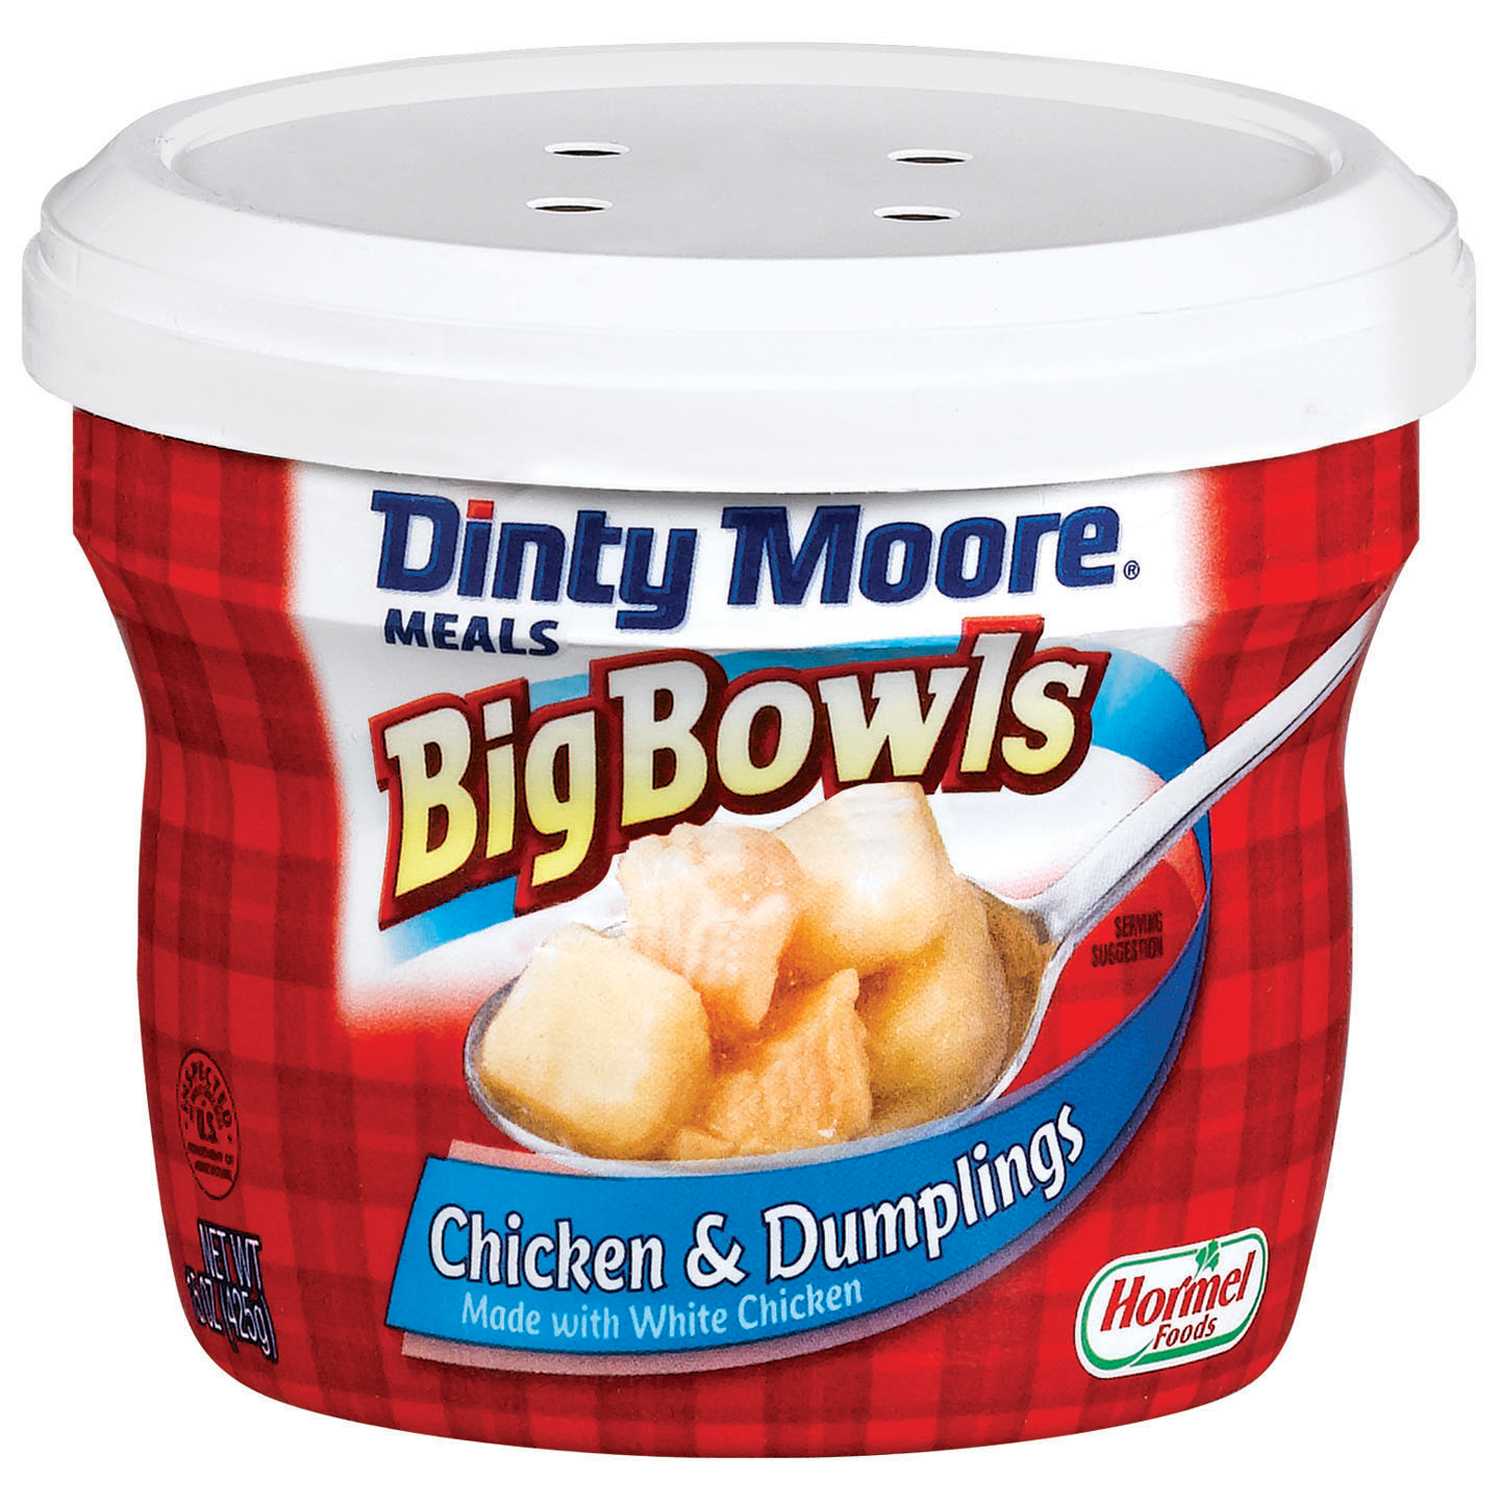 Hormel Dinty Moore Meals Big Bowls Chicken & Dumplings, 15 oz (425 g)